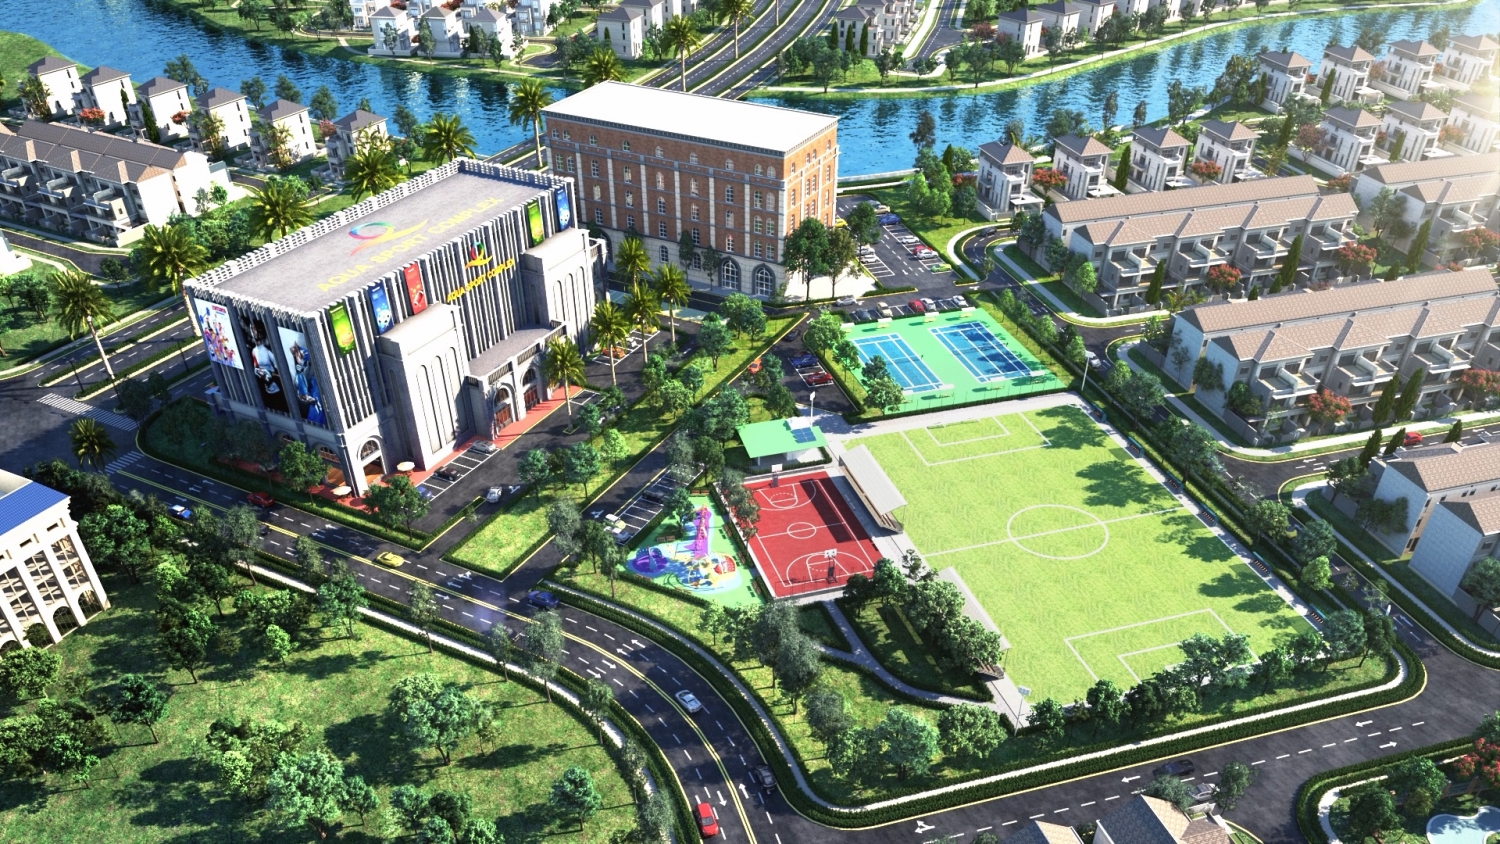 Trung tâm thể thao đa năng Aqua Sport Complex do Citygym vận hành là một trong những tiện ích khiến Quốc Cơ ấn tượng